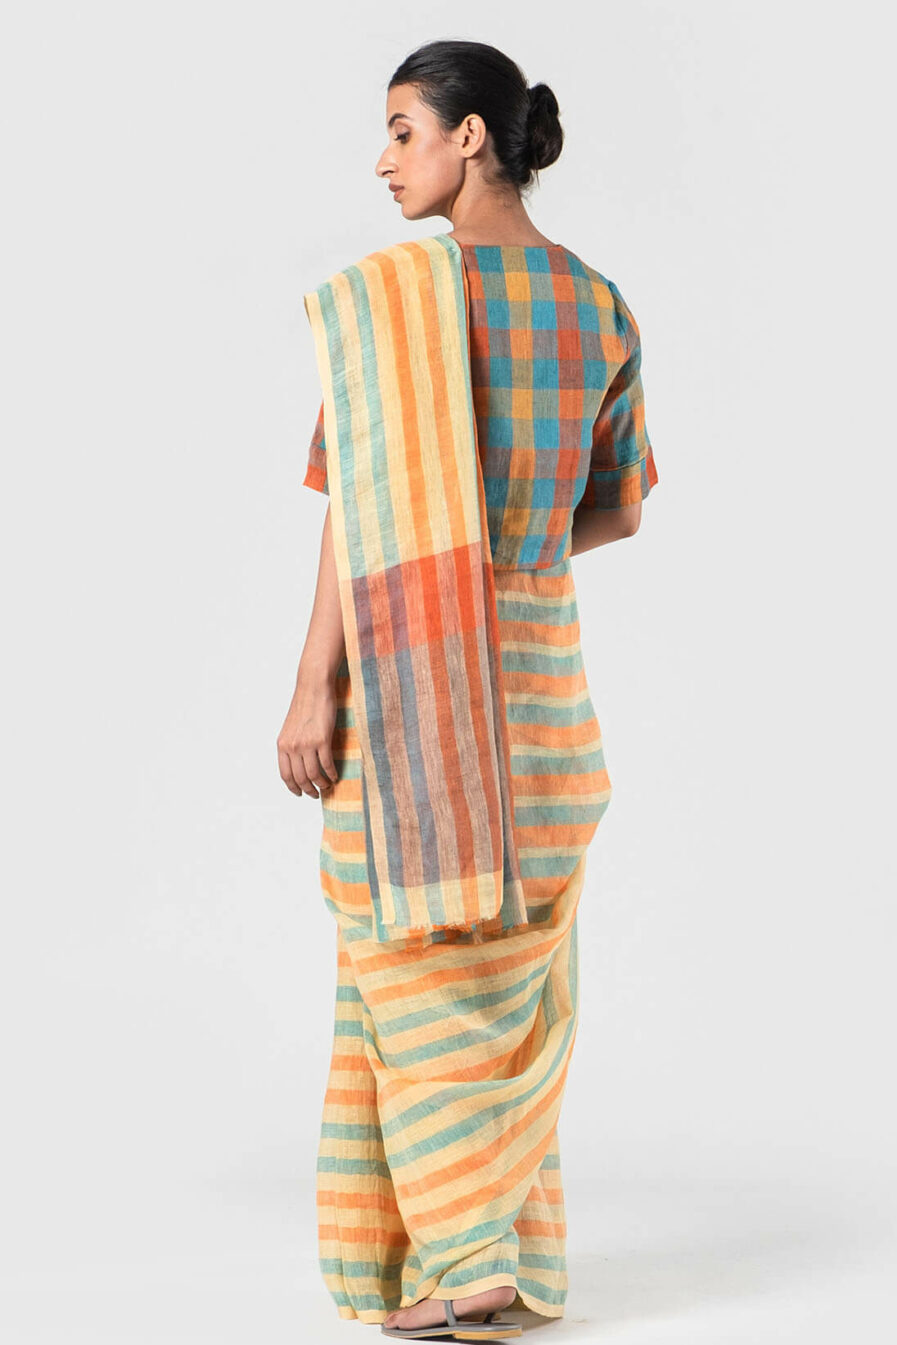 Anavila Squash and Aqua Graded stripes linen sari